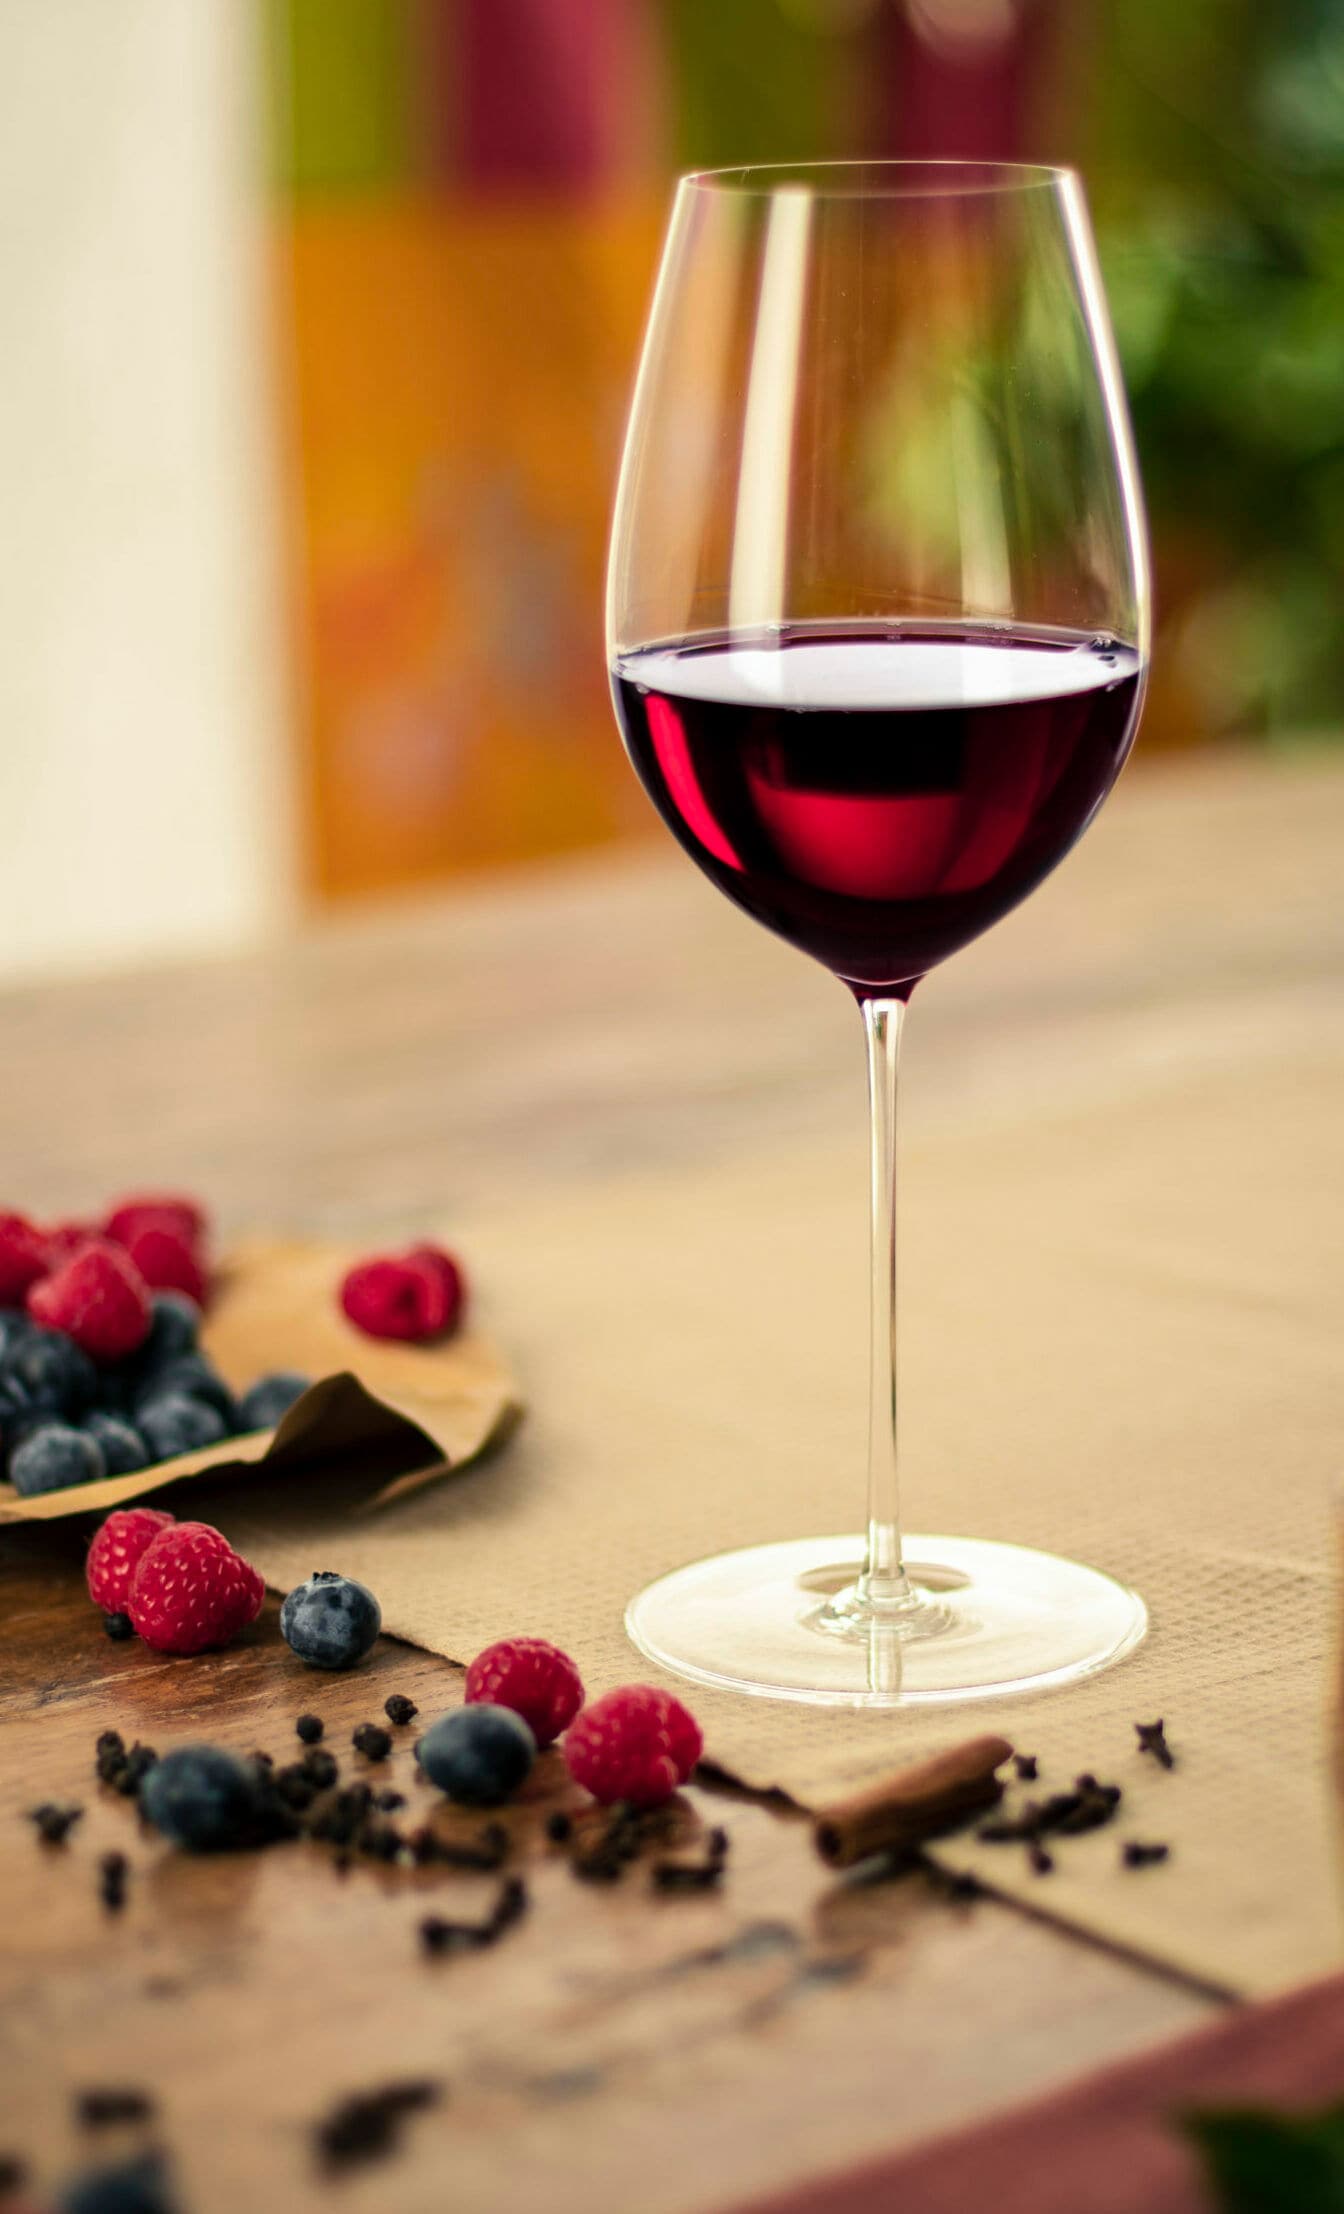 Hochstieliges Weinglas mit Rotwein befüllt.